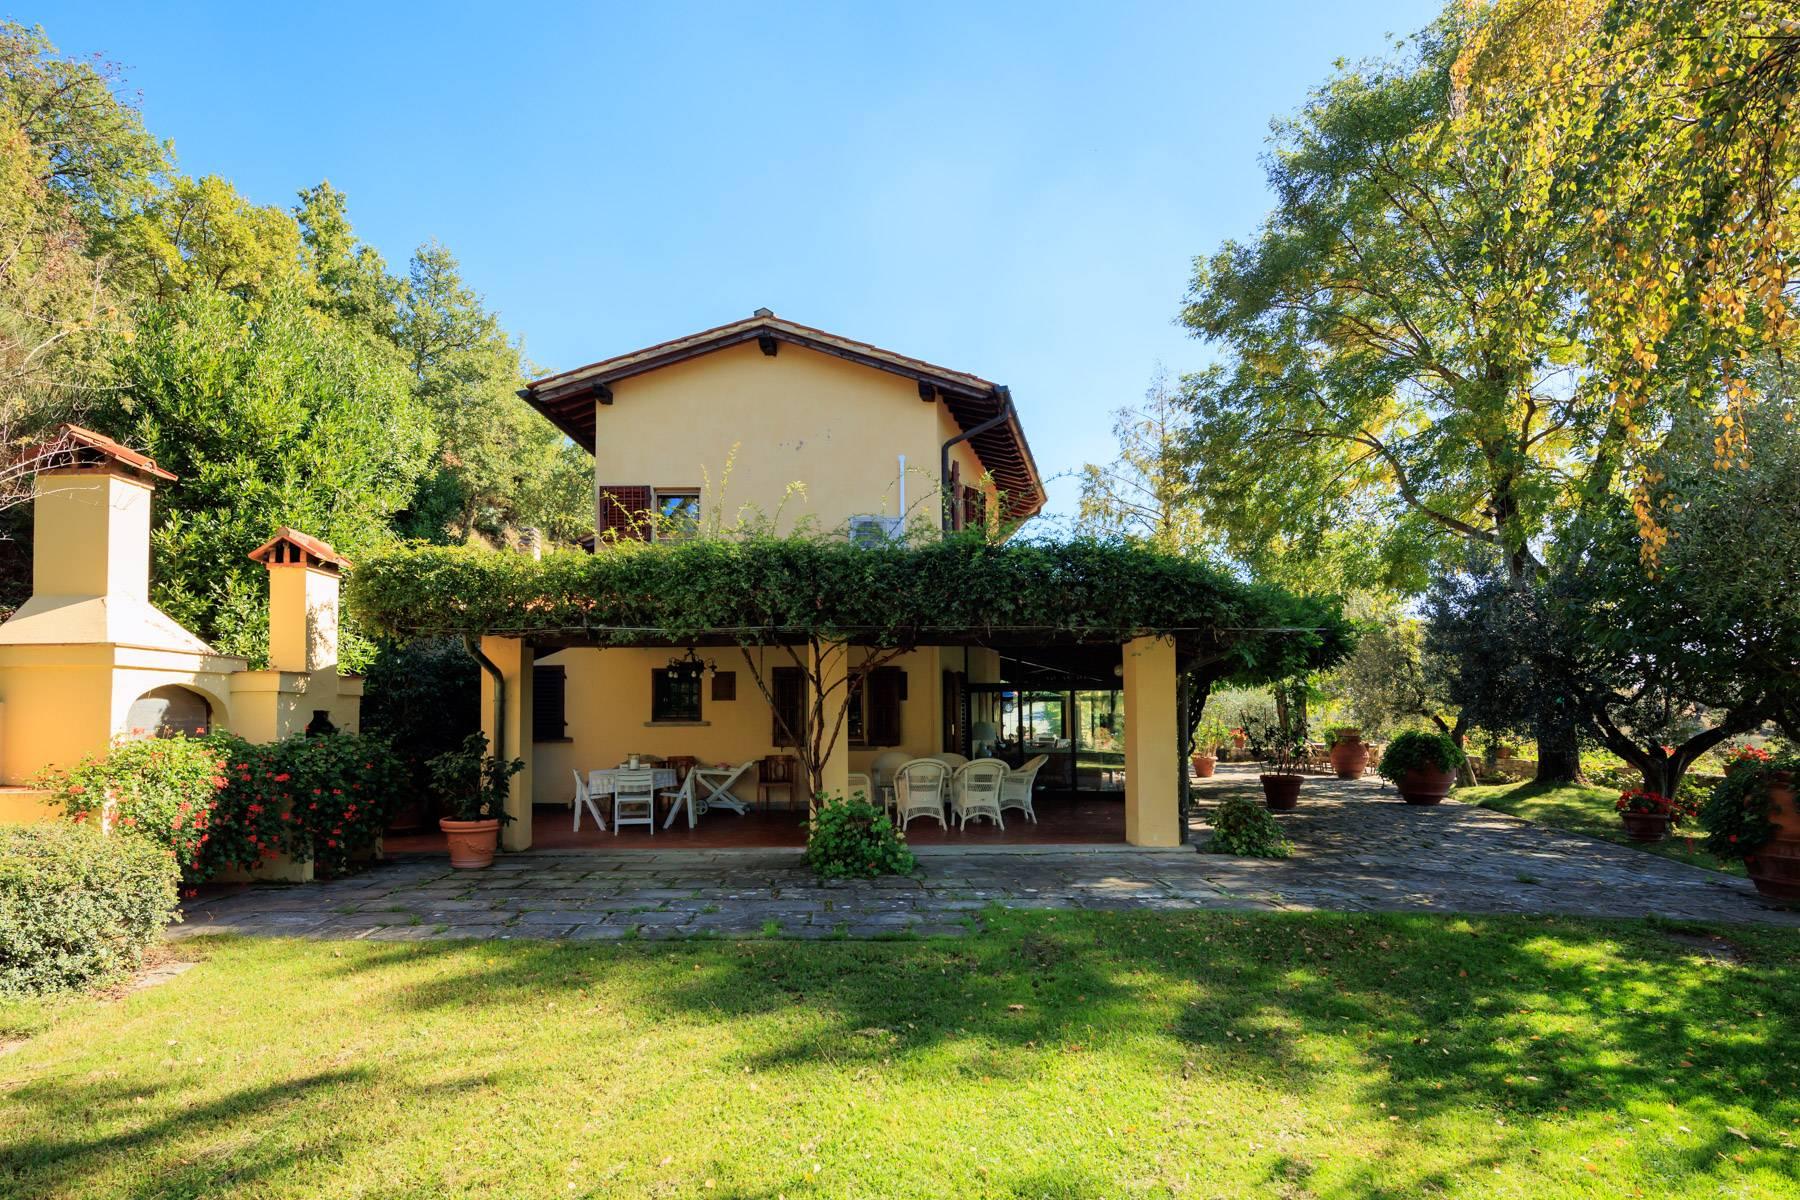 Casale in stile Toscano con 30 ettari di terreno - 27